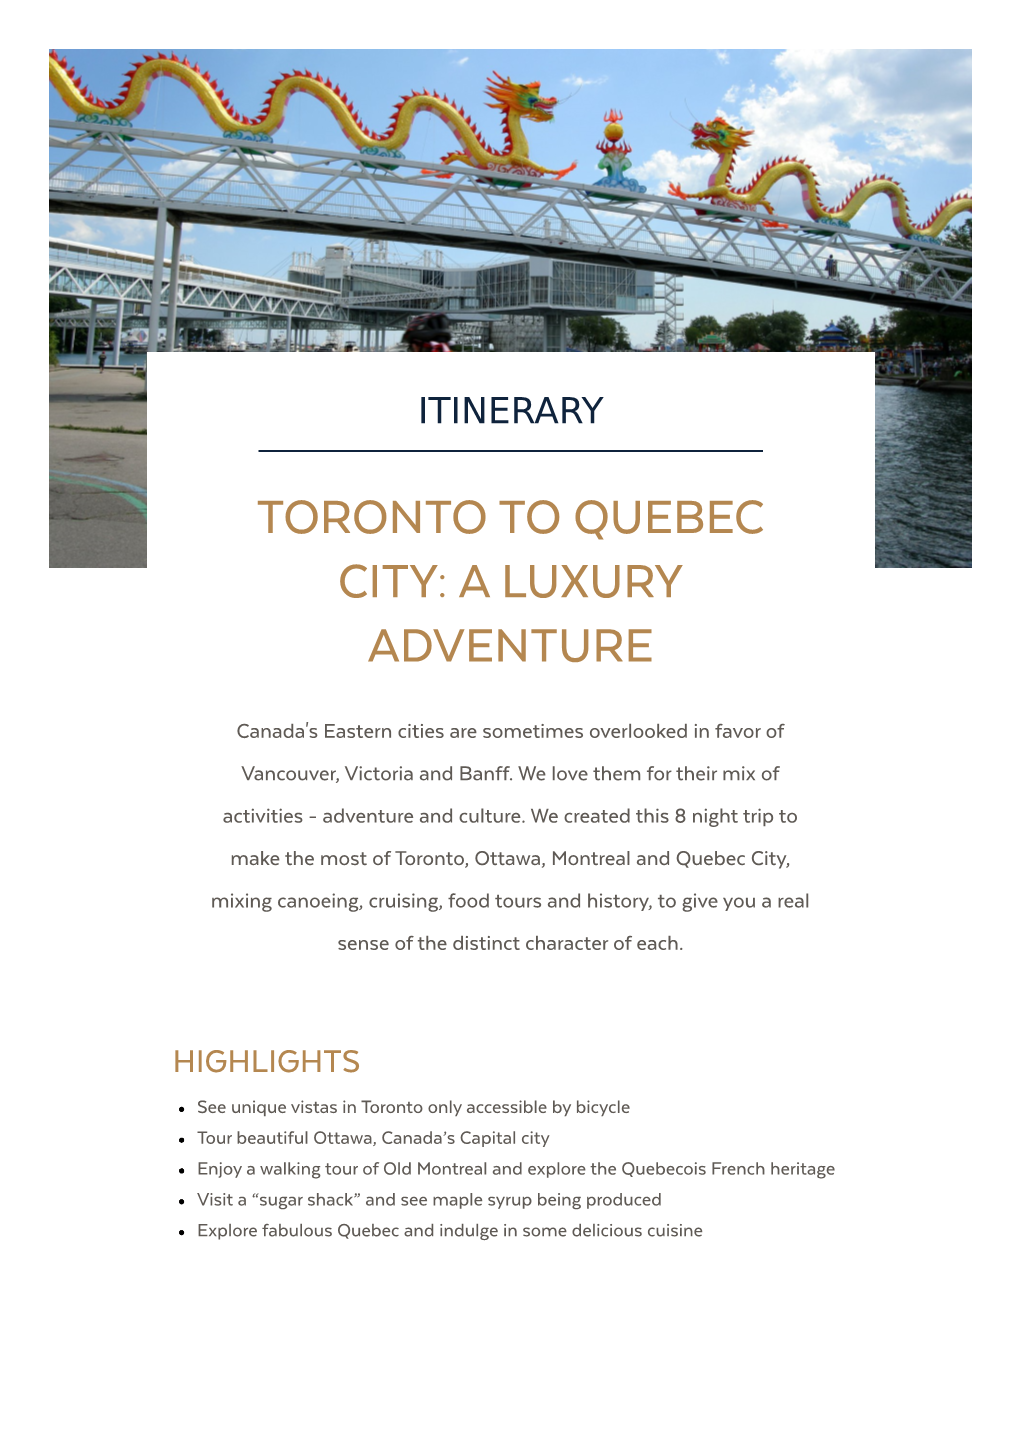 Toronto to Quebec City: a Luxury Adventure